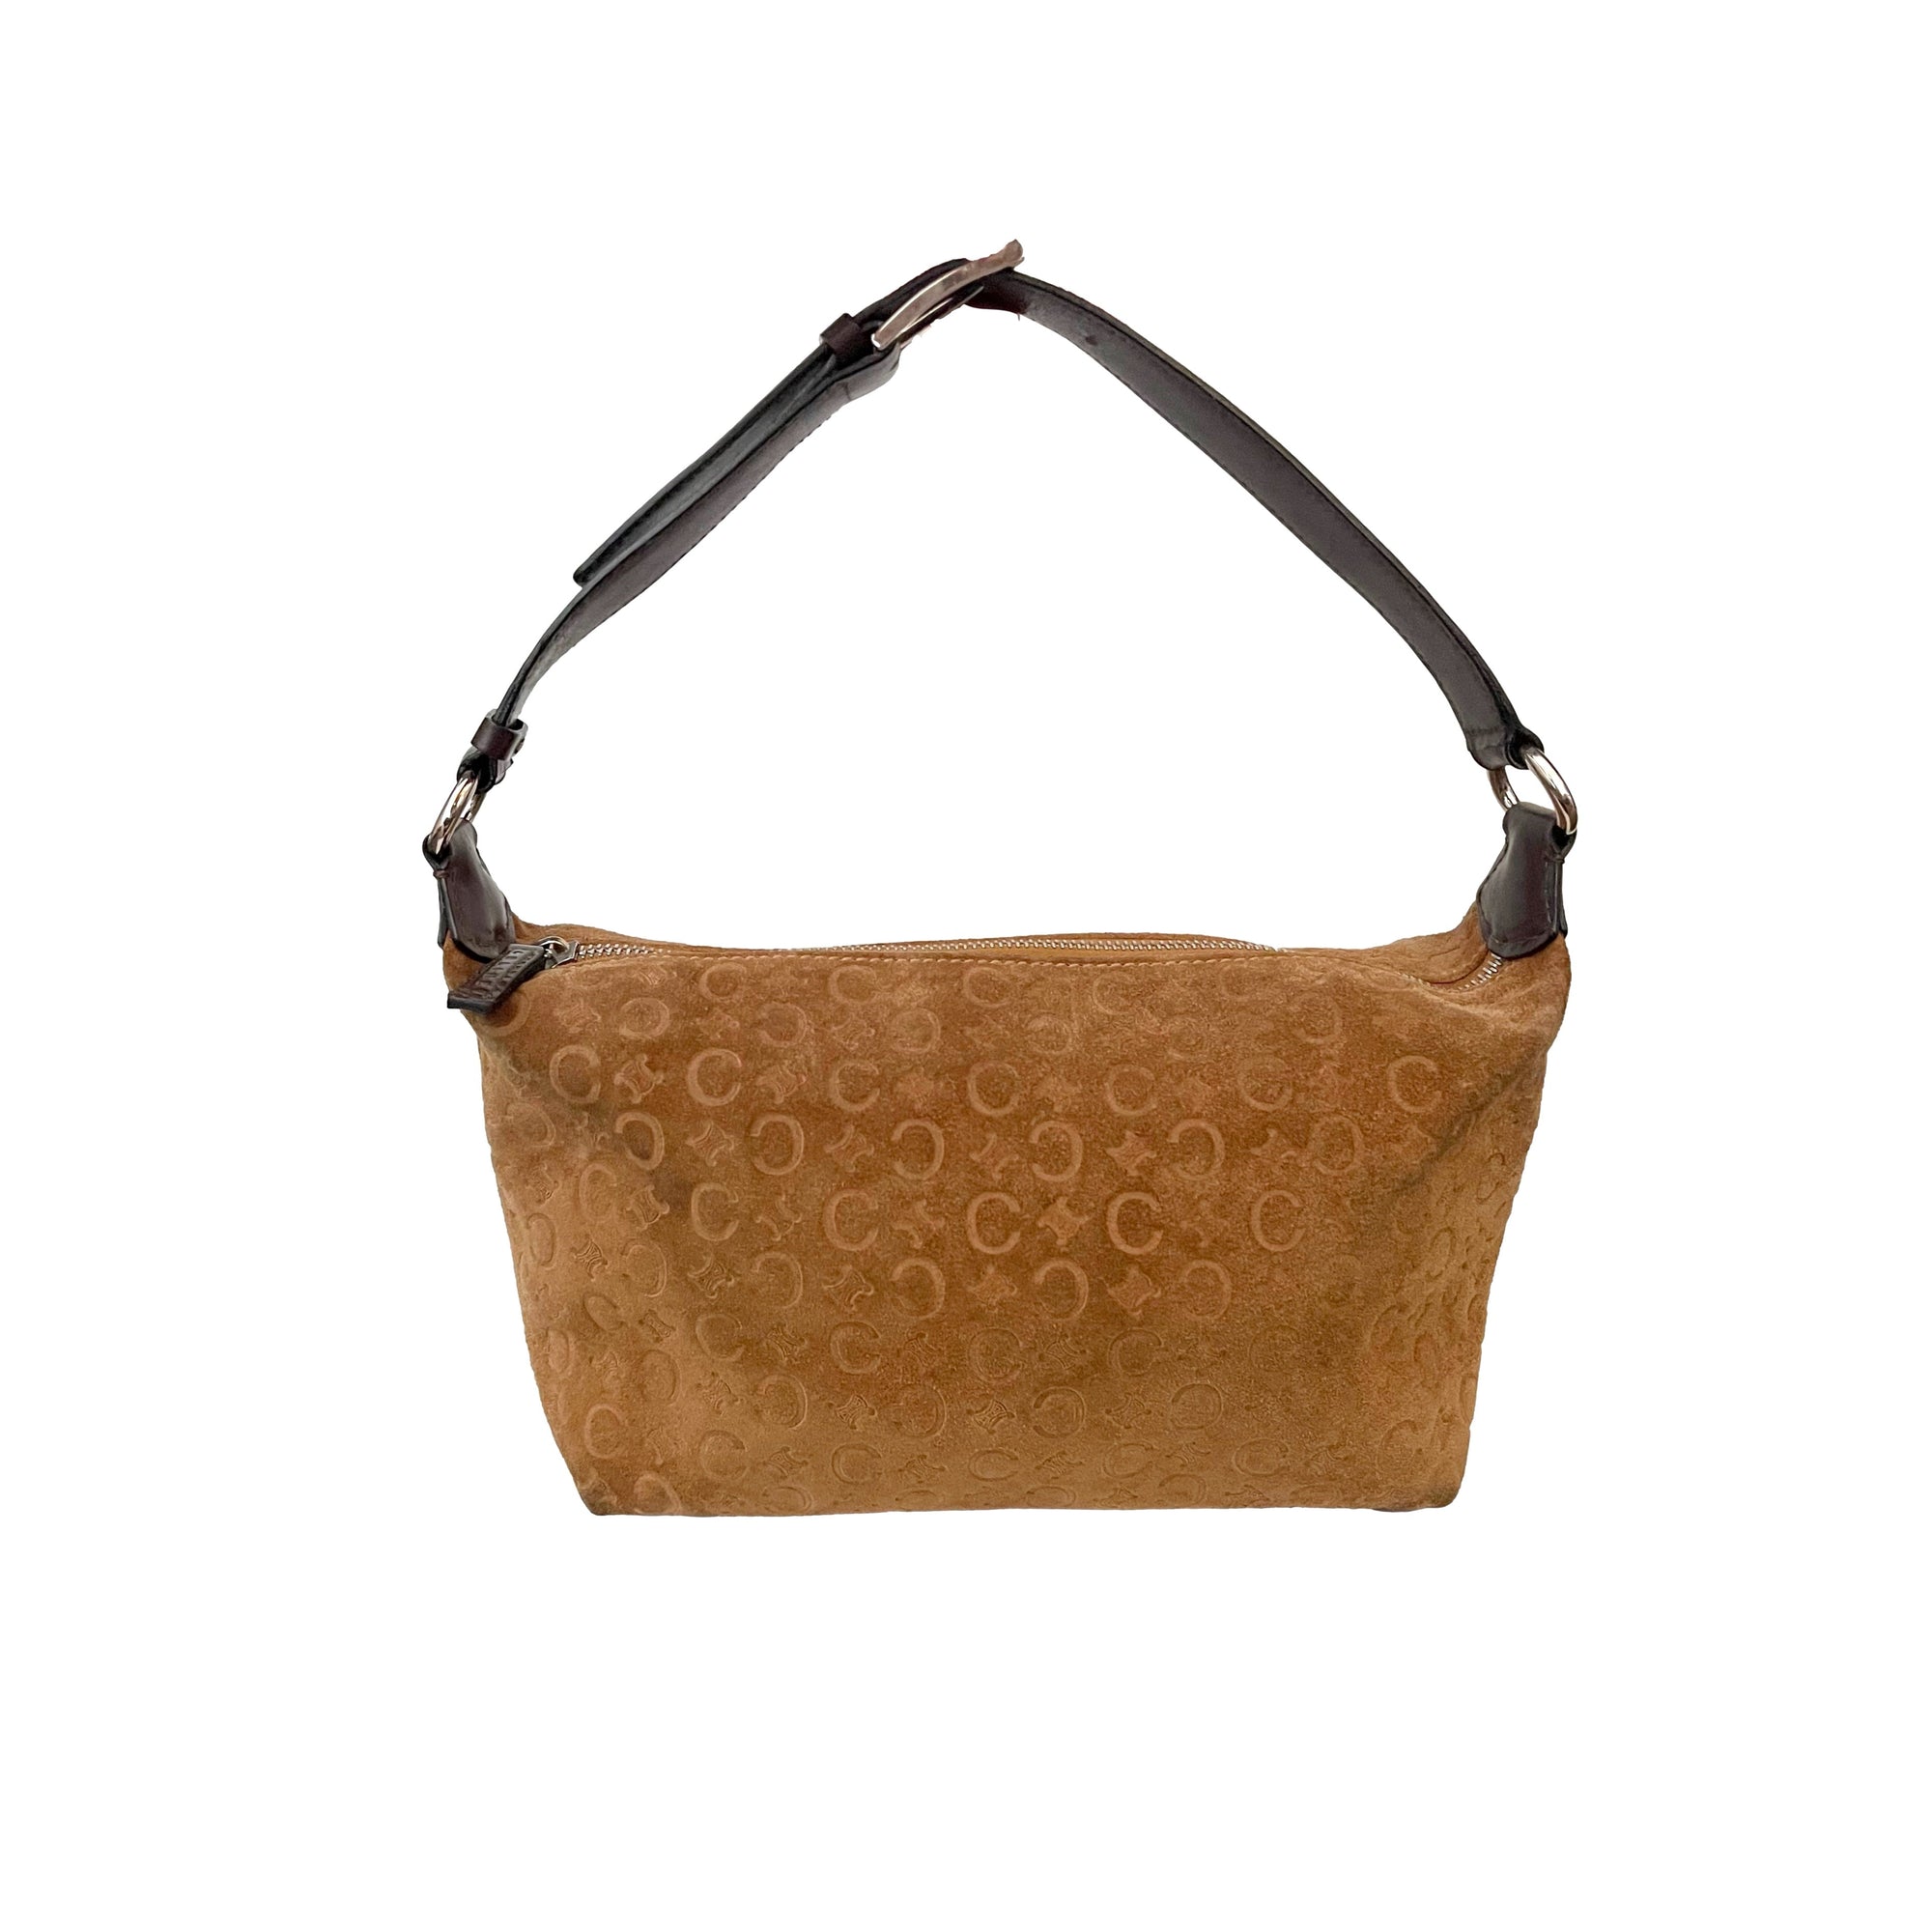 Celine Brown Suede Shoulder Bag - Handbags